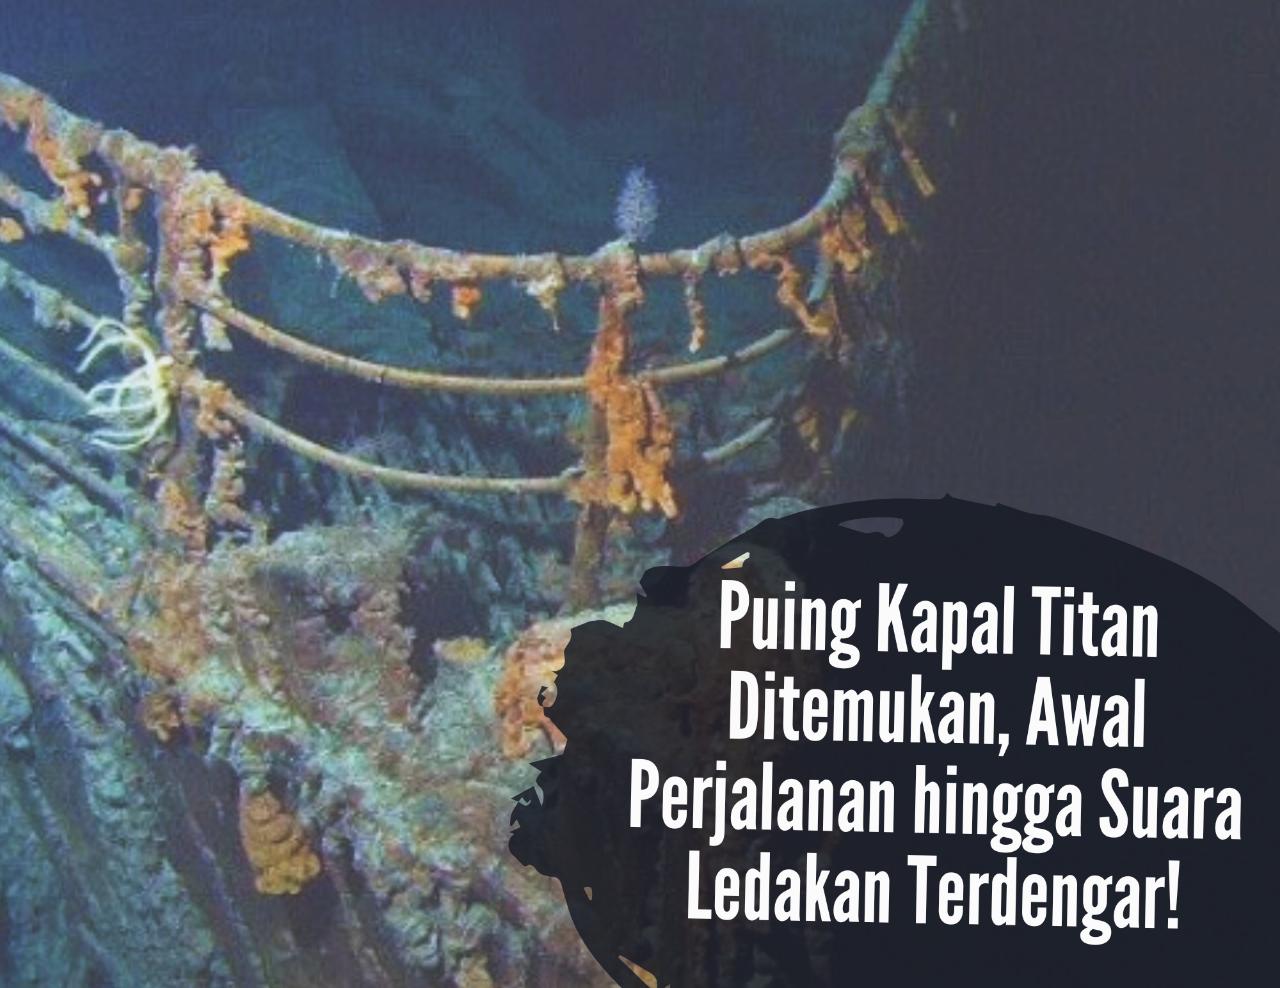 Puing Kapal Selam Titan Ditemukan, Awal Perjalanan hingga Suara Ledakan Terdengar, Ini Kabar 5 Orang Itu!